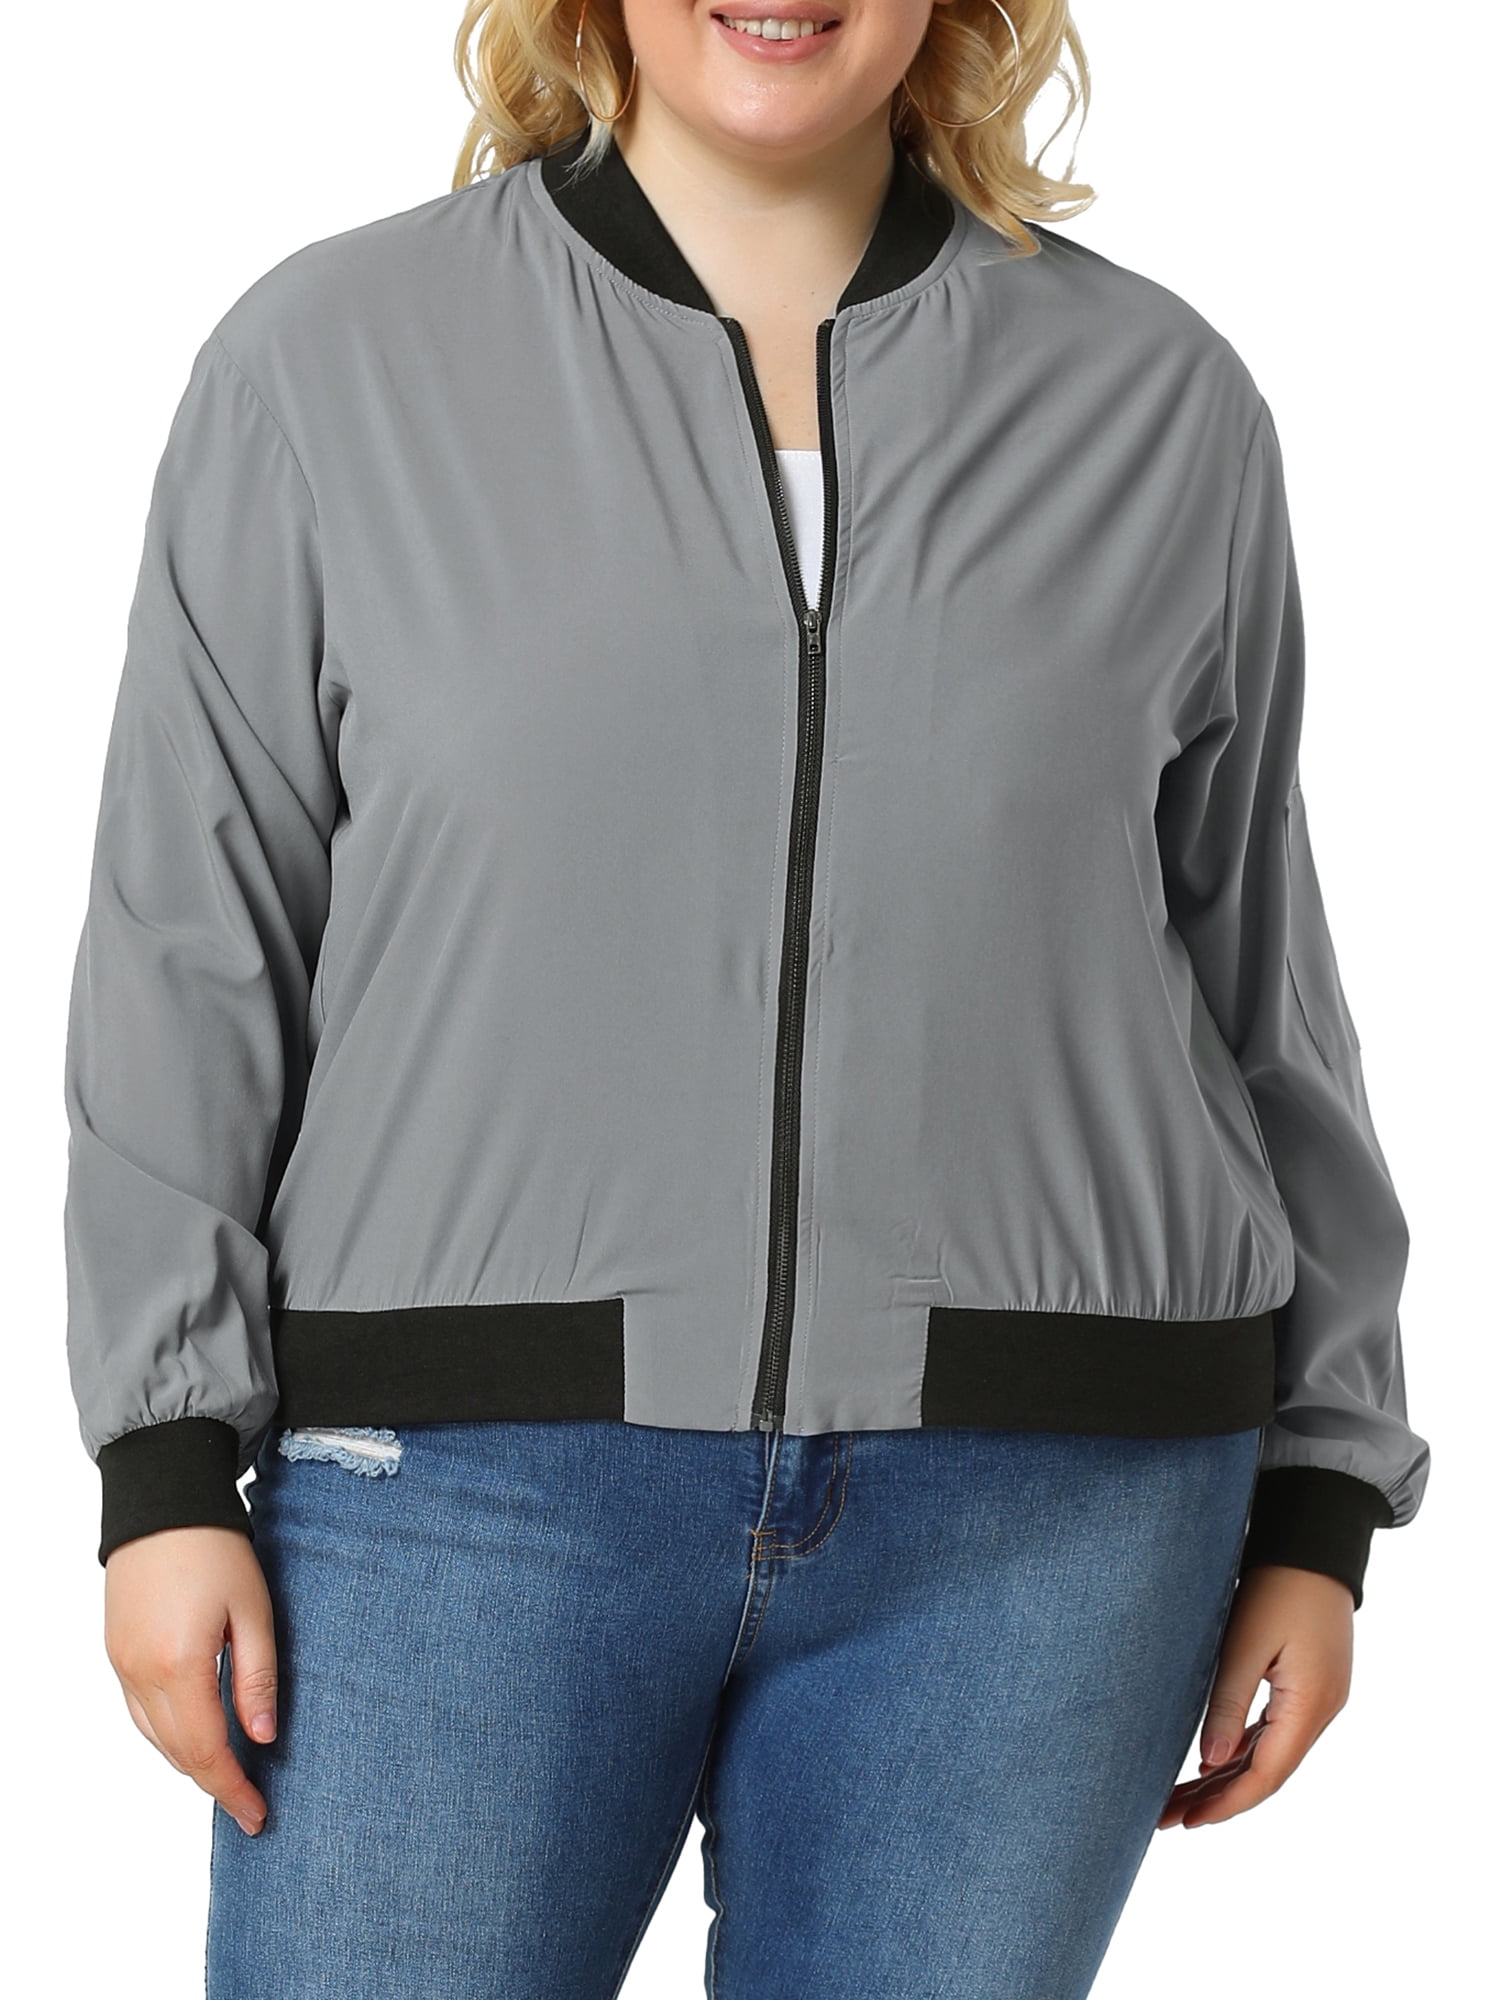 Unique Bargains Women's Quilted Zip Up Moto Raglan Sleeves Bomber Jacket -  Walmart.com